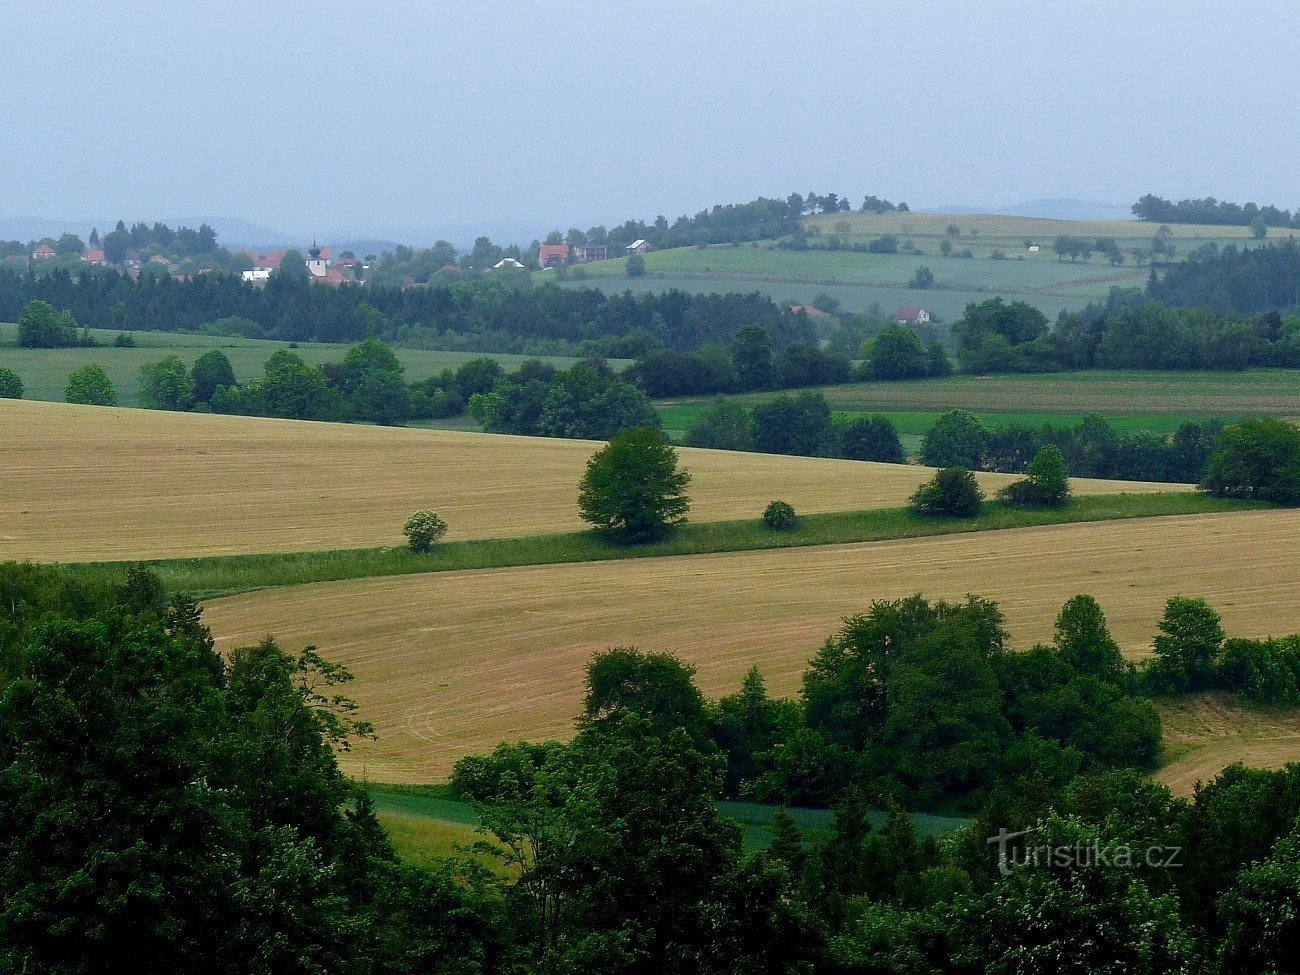 Omgivningarna i Rozseč - utsikt över Sulíkov